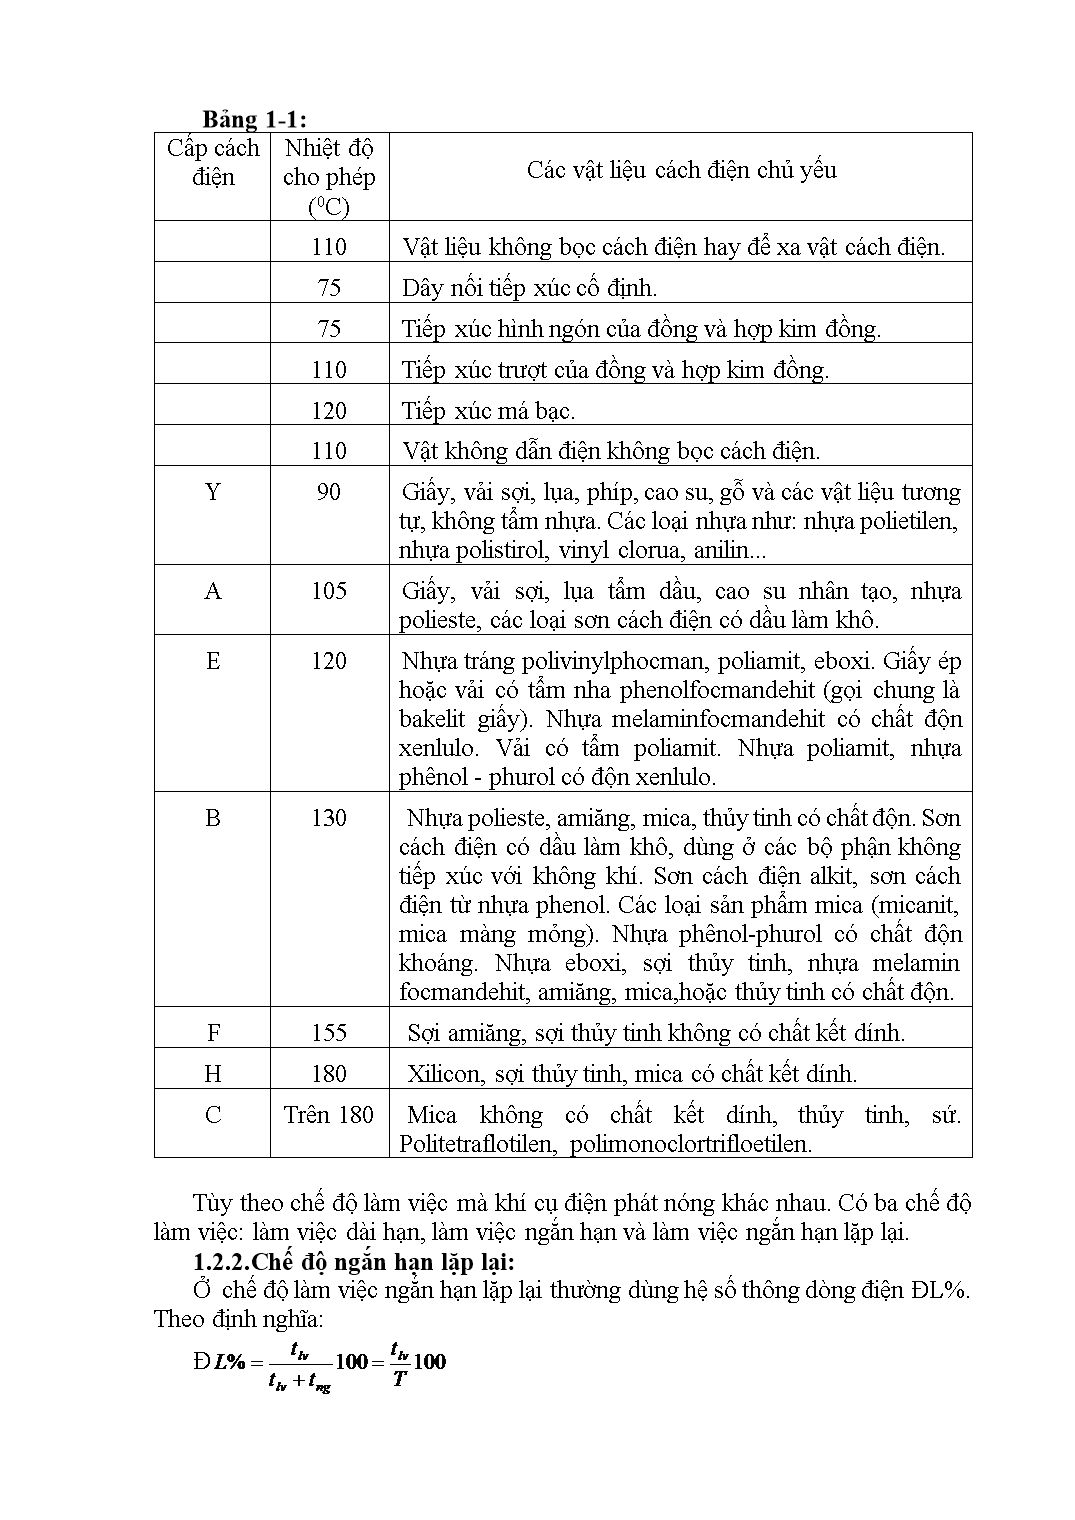 Giáo trình môn Khí cụ điện trang 7